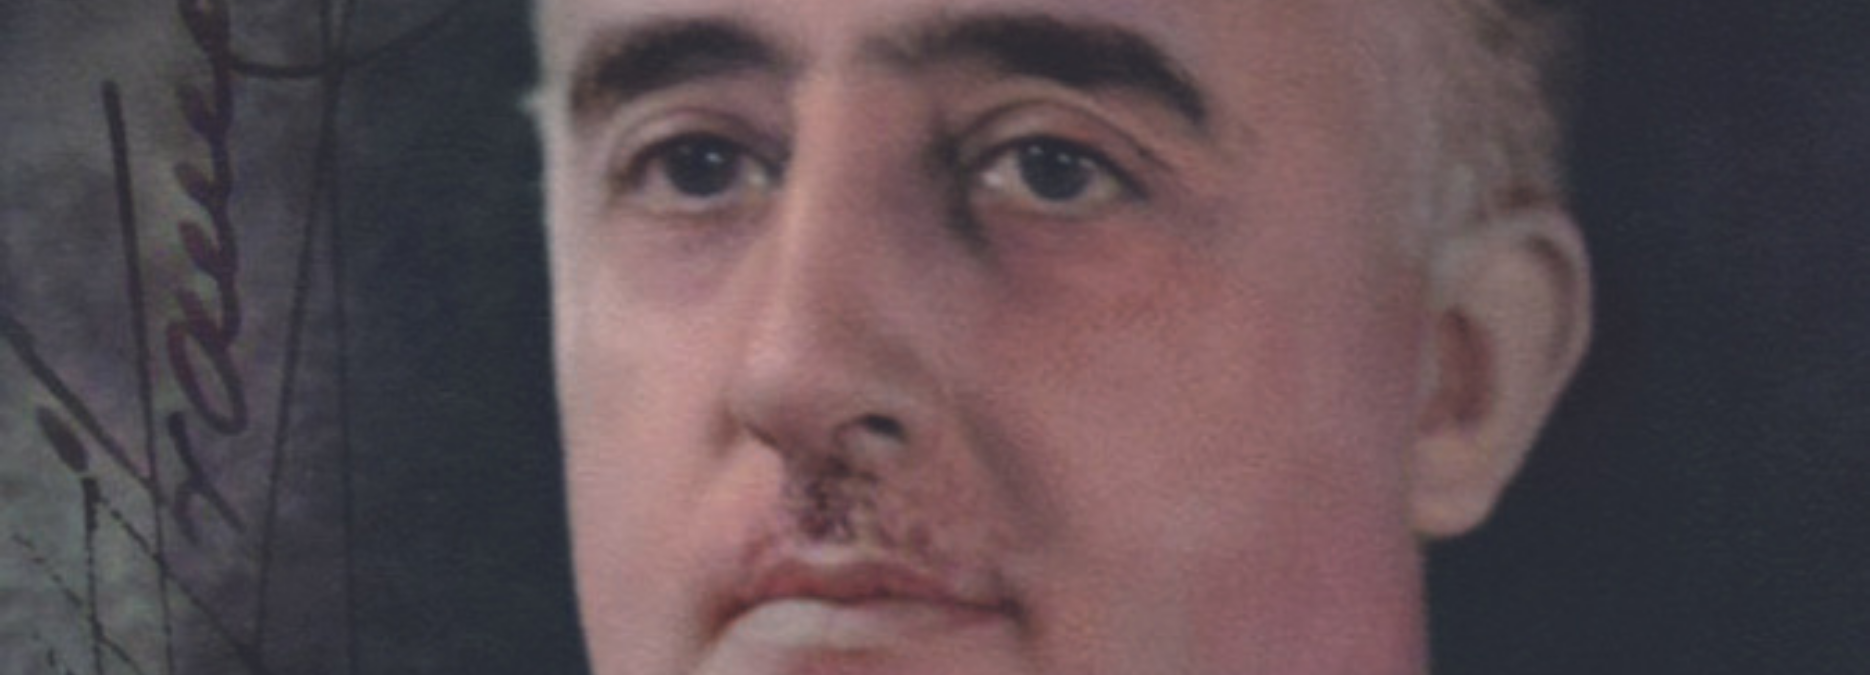 La Franc-maçonnerie, par le général Francisco Franco